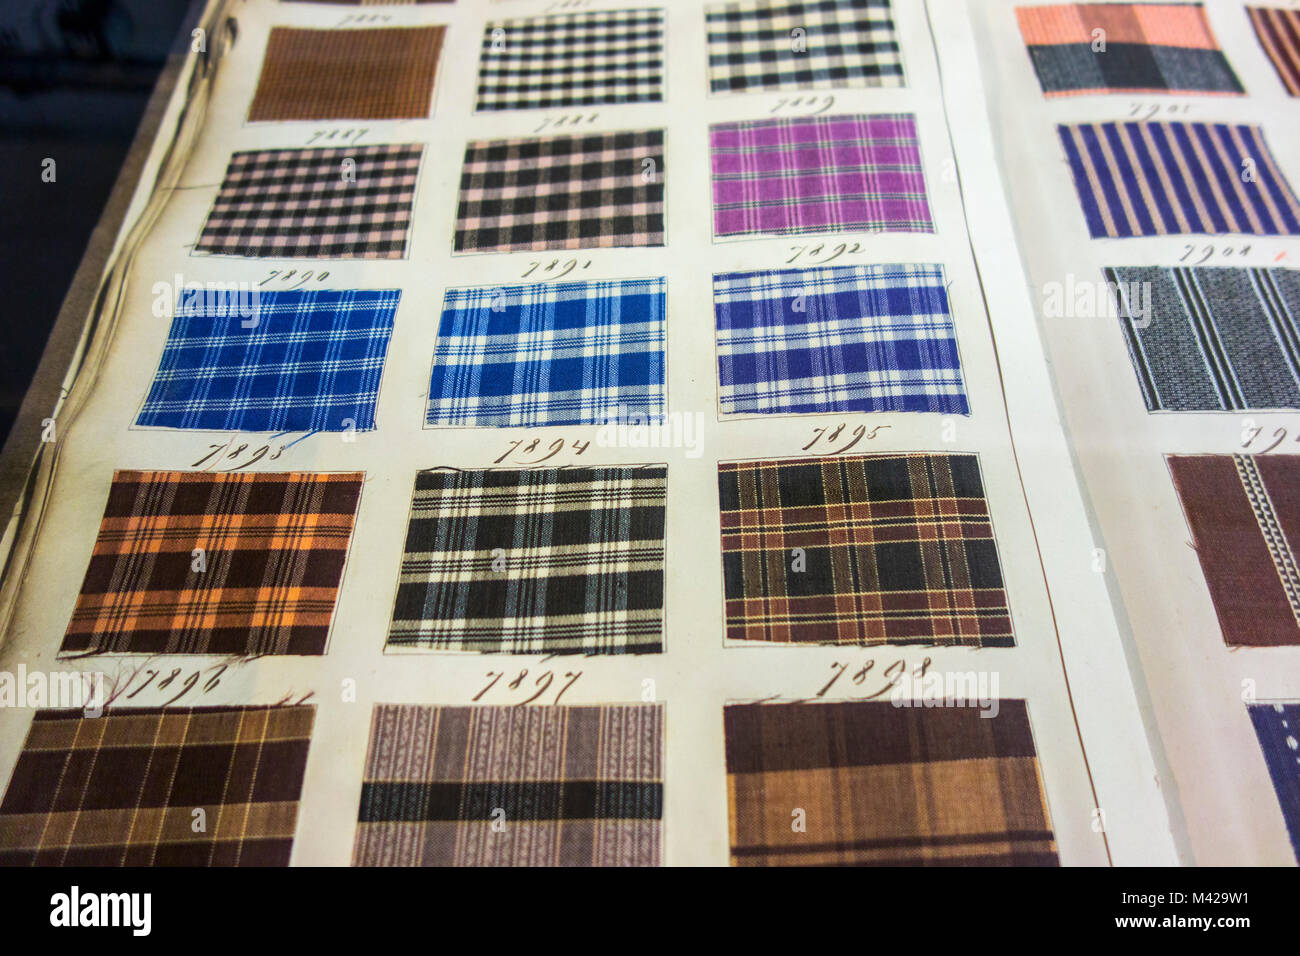 Pagina in vecchi campioni tessili prenota mostra a scacchi in campioni di tessuto con diversi modelli di tessitura e combinazioni di colori Foto Stock